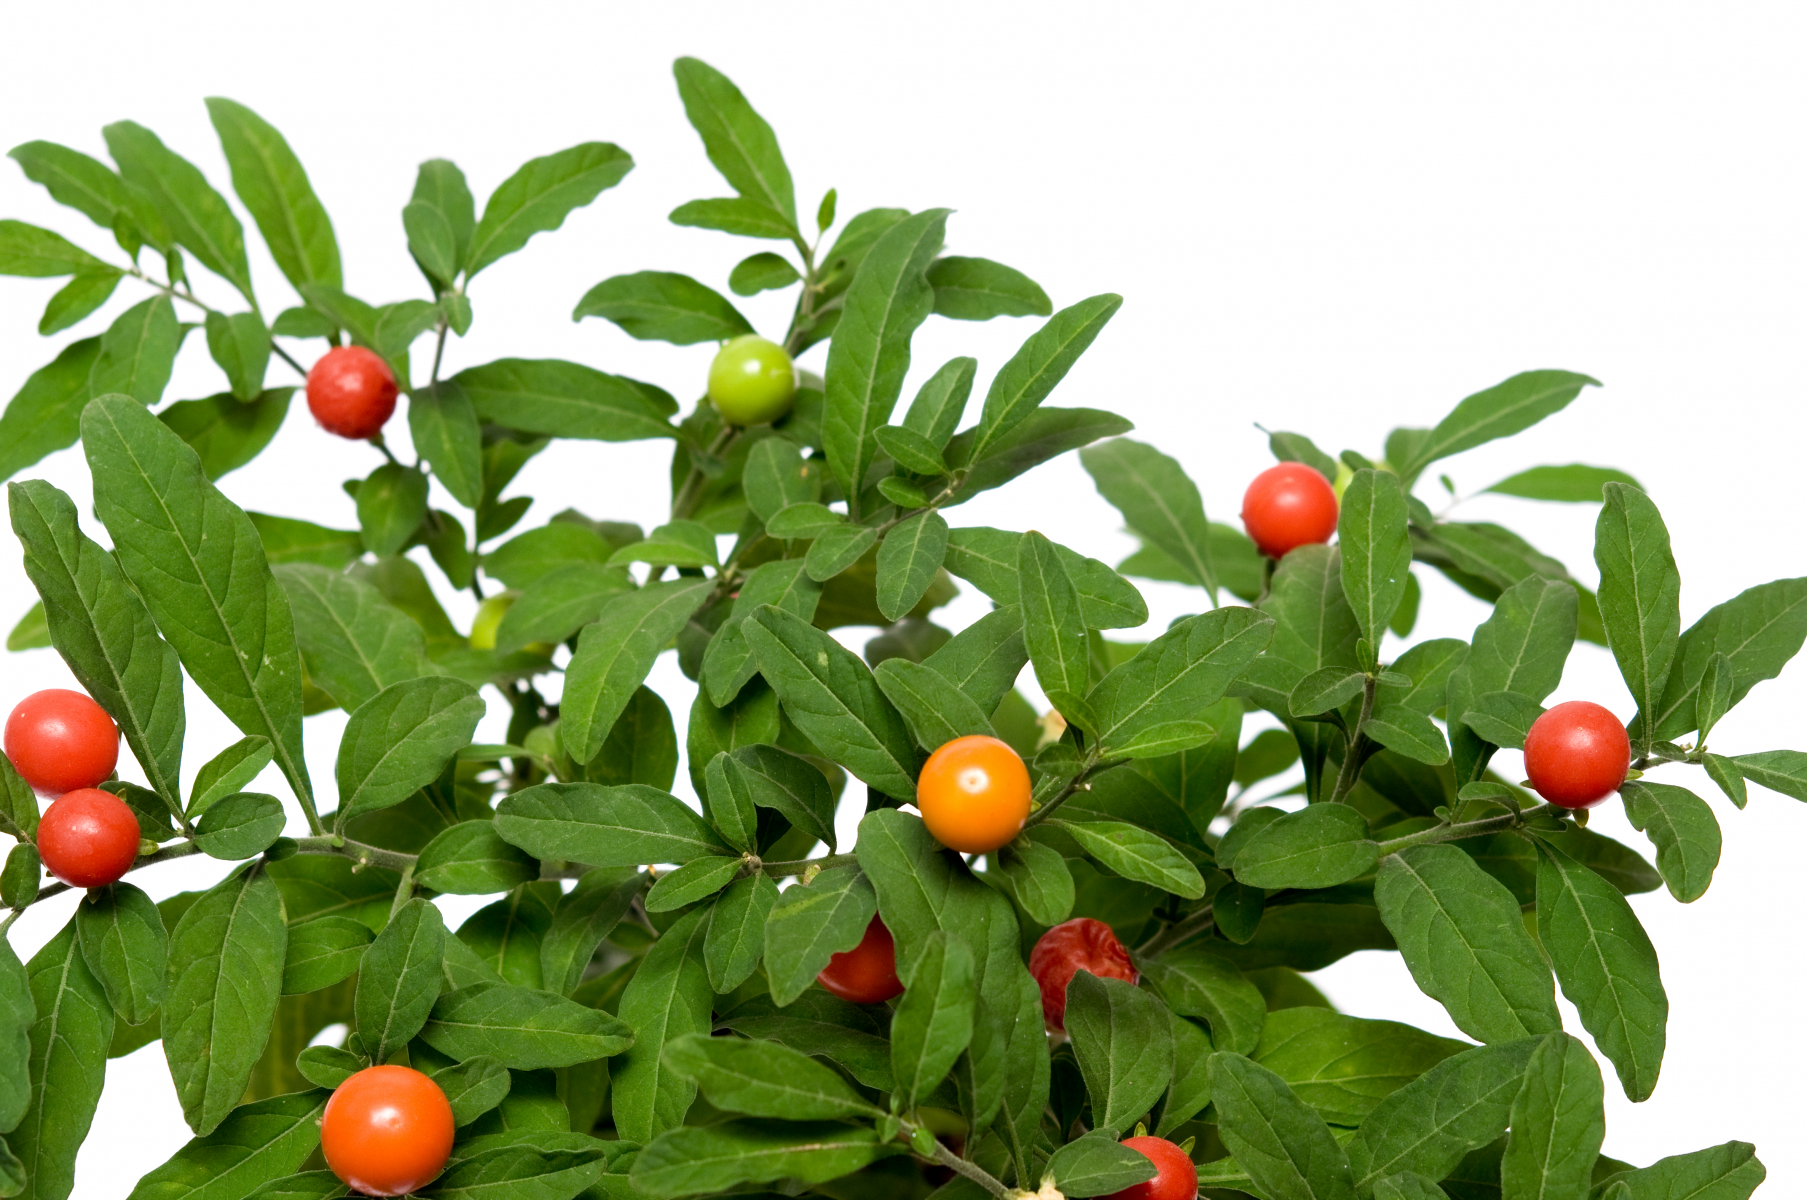 Lansettformede (ovale) blader med blanke bær i diverse farger, grønne, oransje og røde